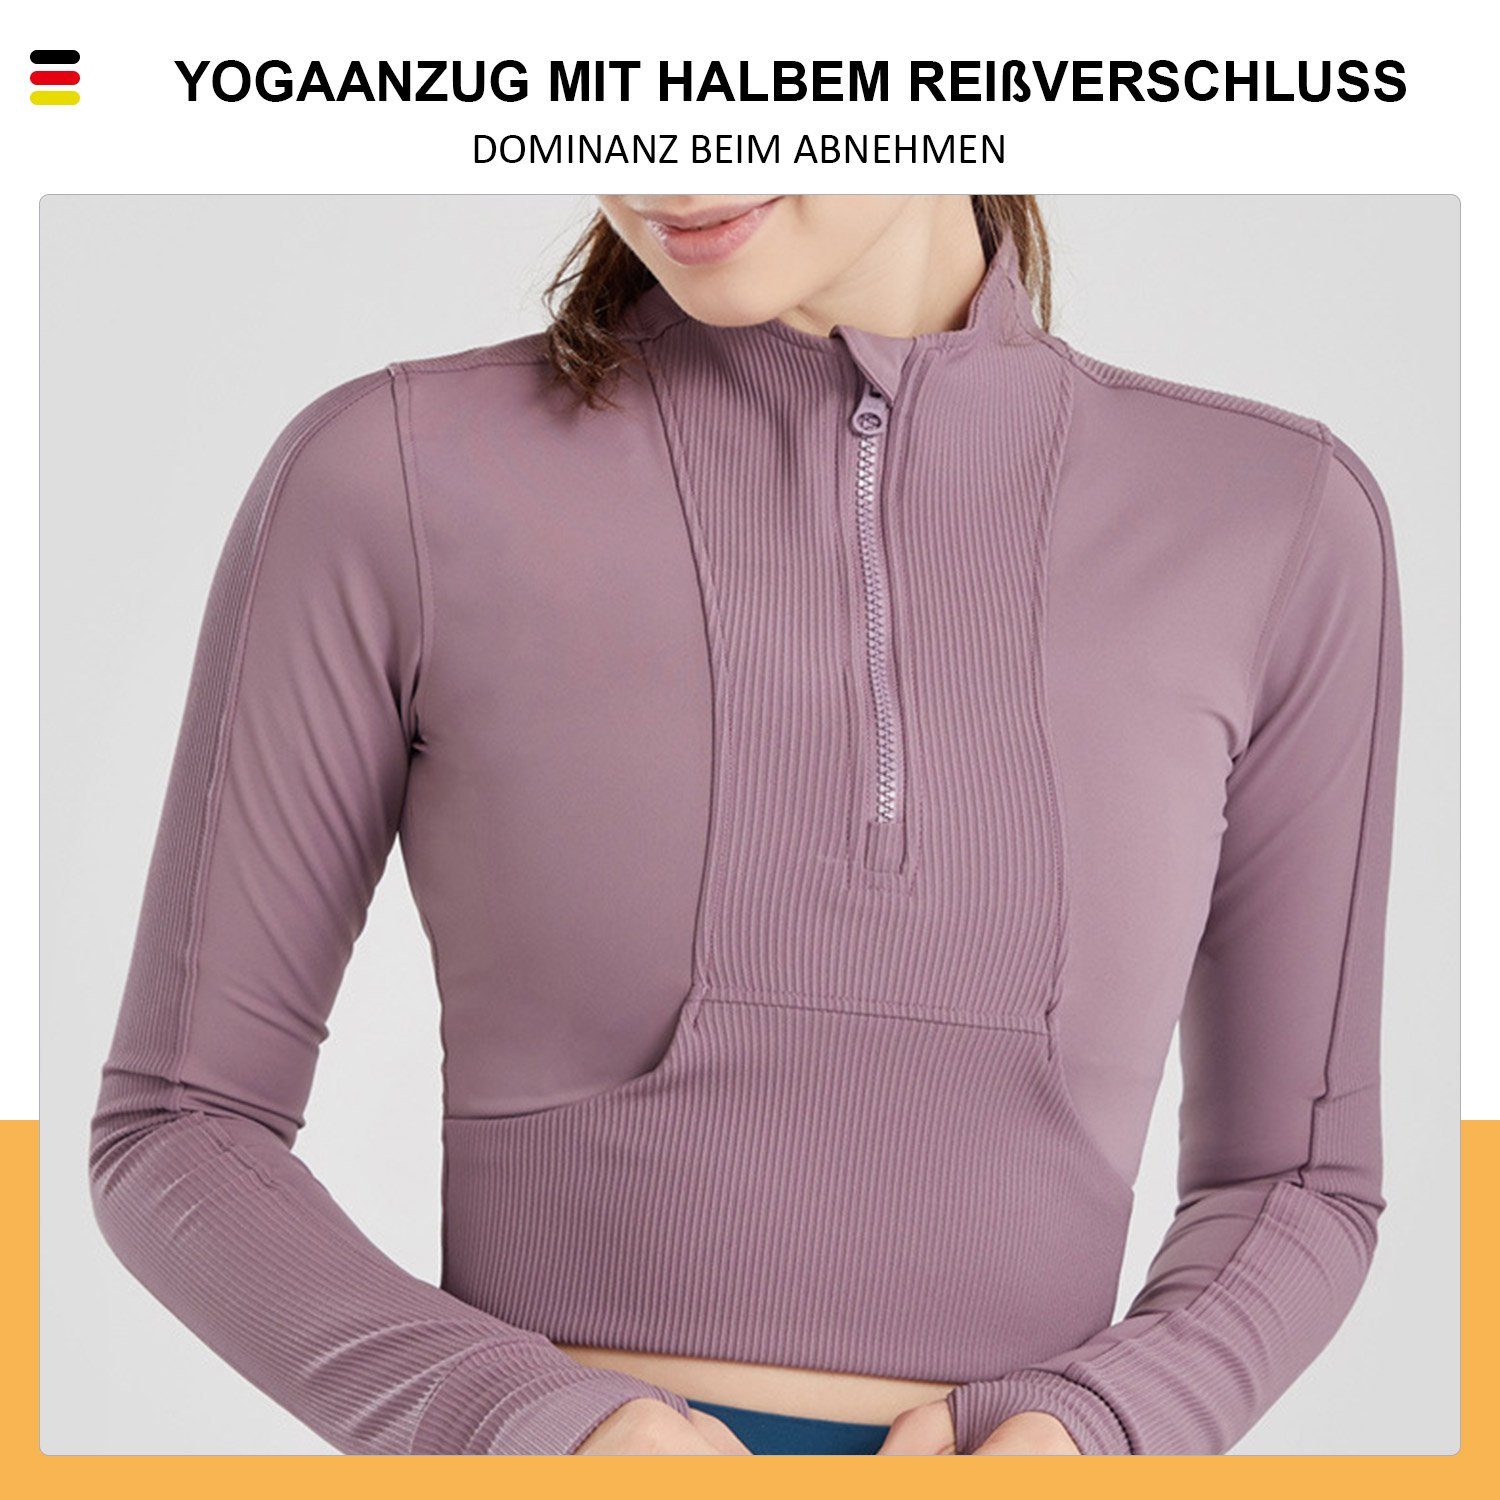 MAGICSHE Funktionsshirt T-Shirt Damen Sweatshirt Design Brust Leicht Lila Reißverschluss Halber Top Fitness